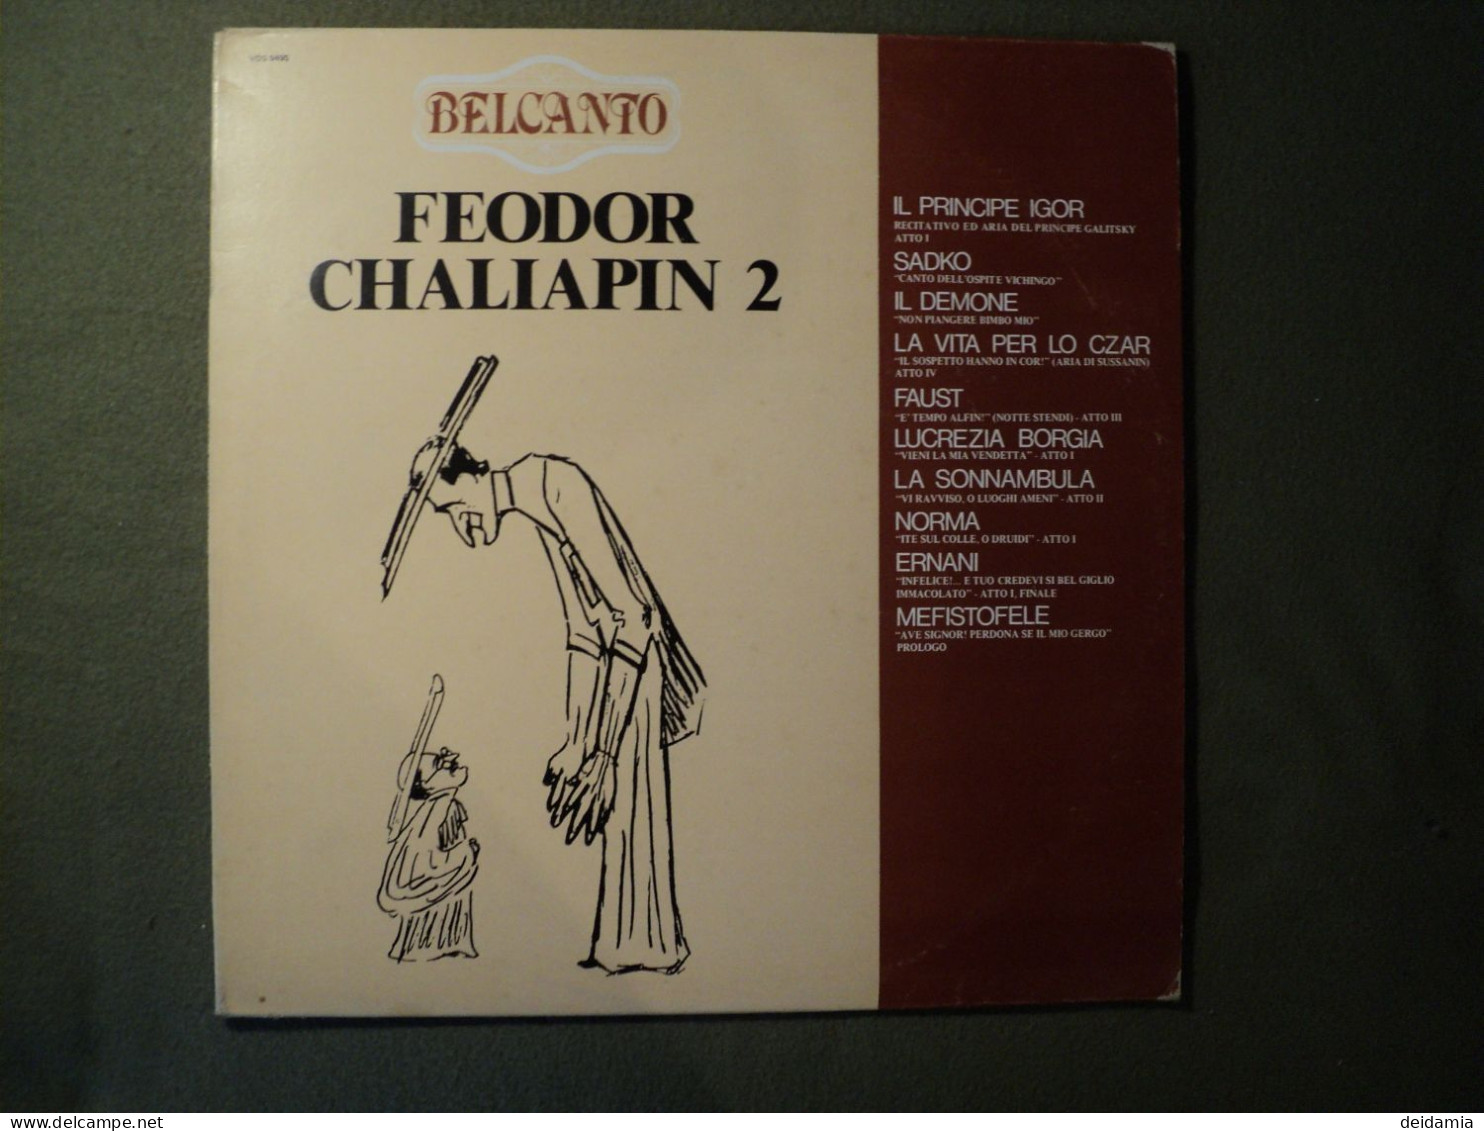 33 TOURS FEODOR CHALIAPIN. 1980. VOLUME 2. BELCANTO. VDS 9495 IL PRINCIPE IGOR / SADKO / IL DEMONE / LA VITA PER LO CZAR - Autres - Musique Italienne